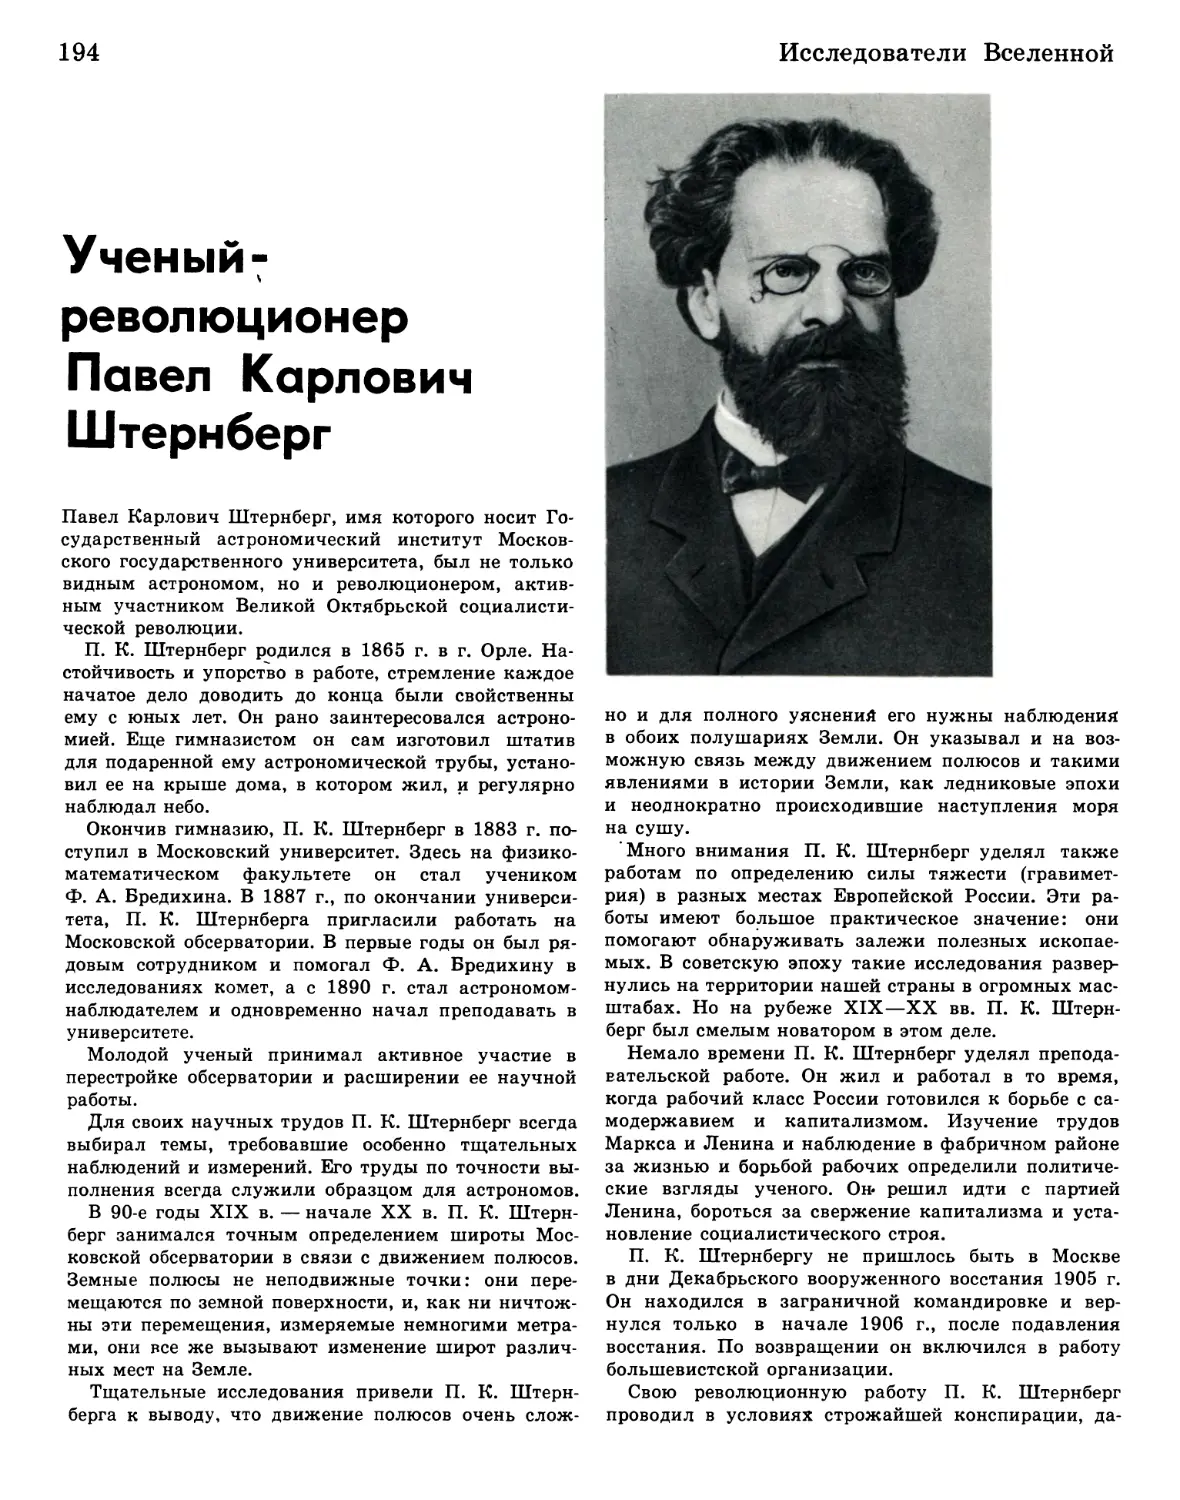 Ученый-революционер Павел Карлович Штернберг